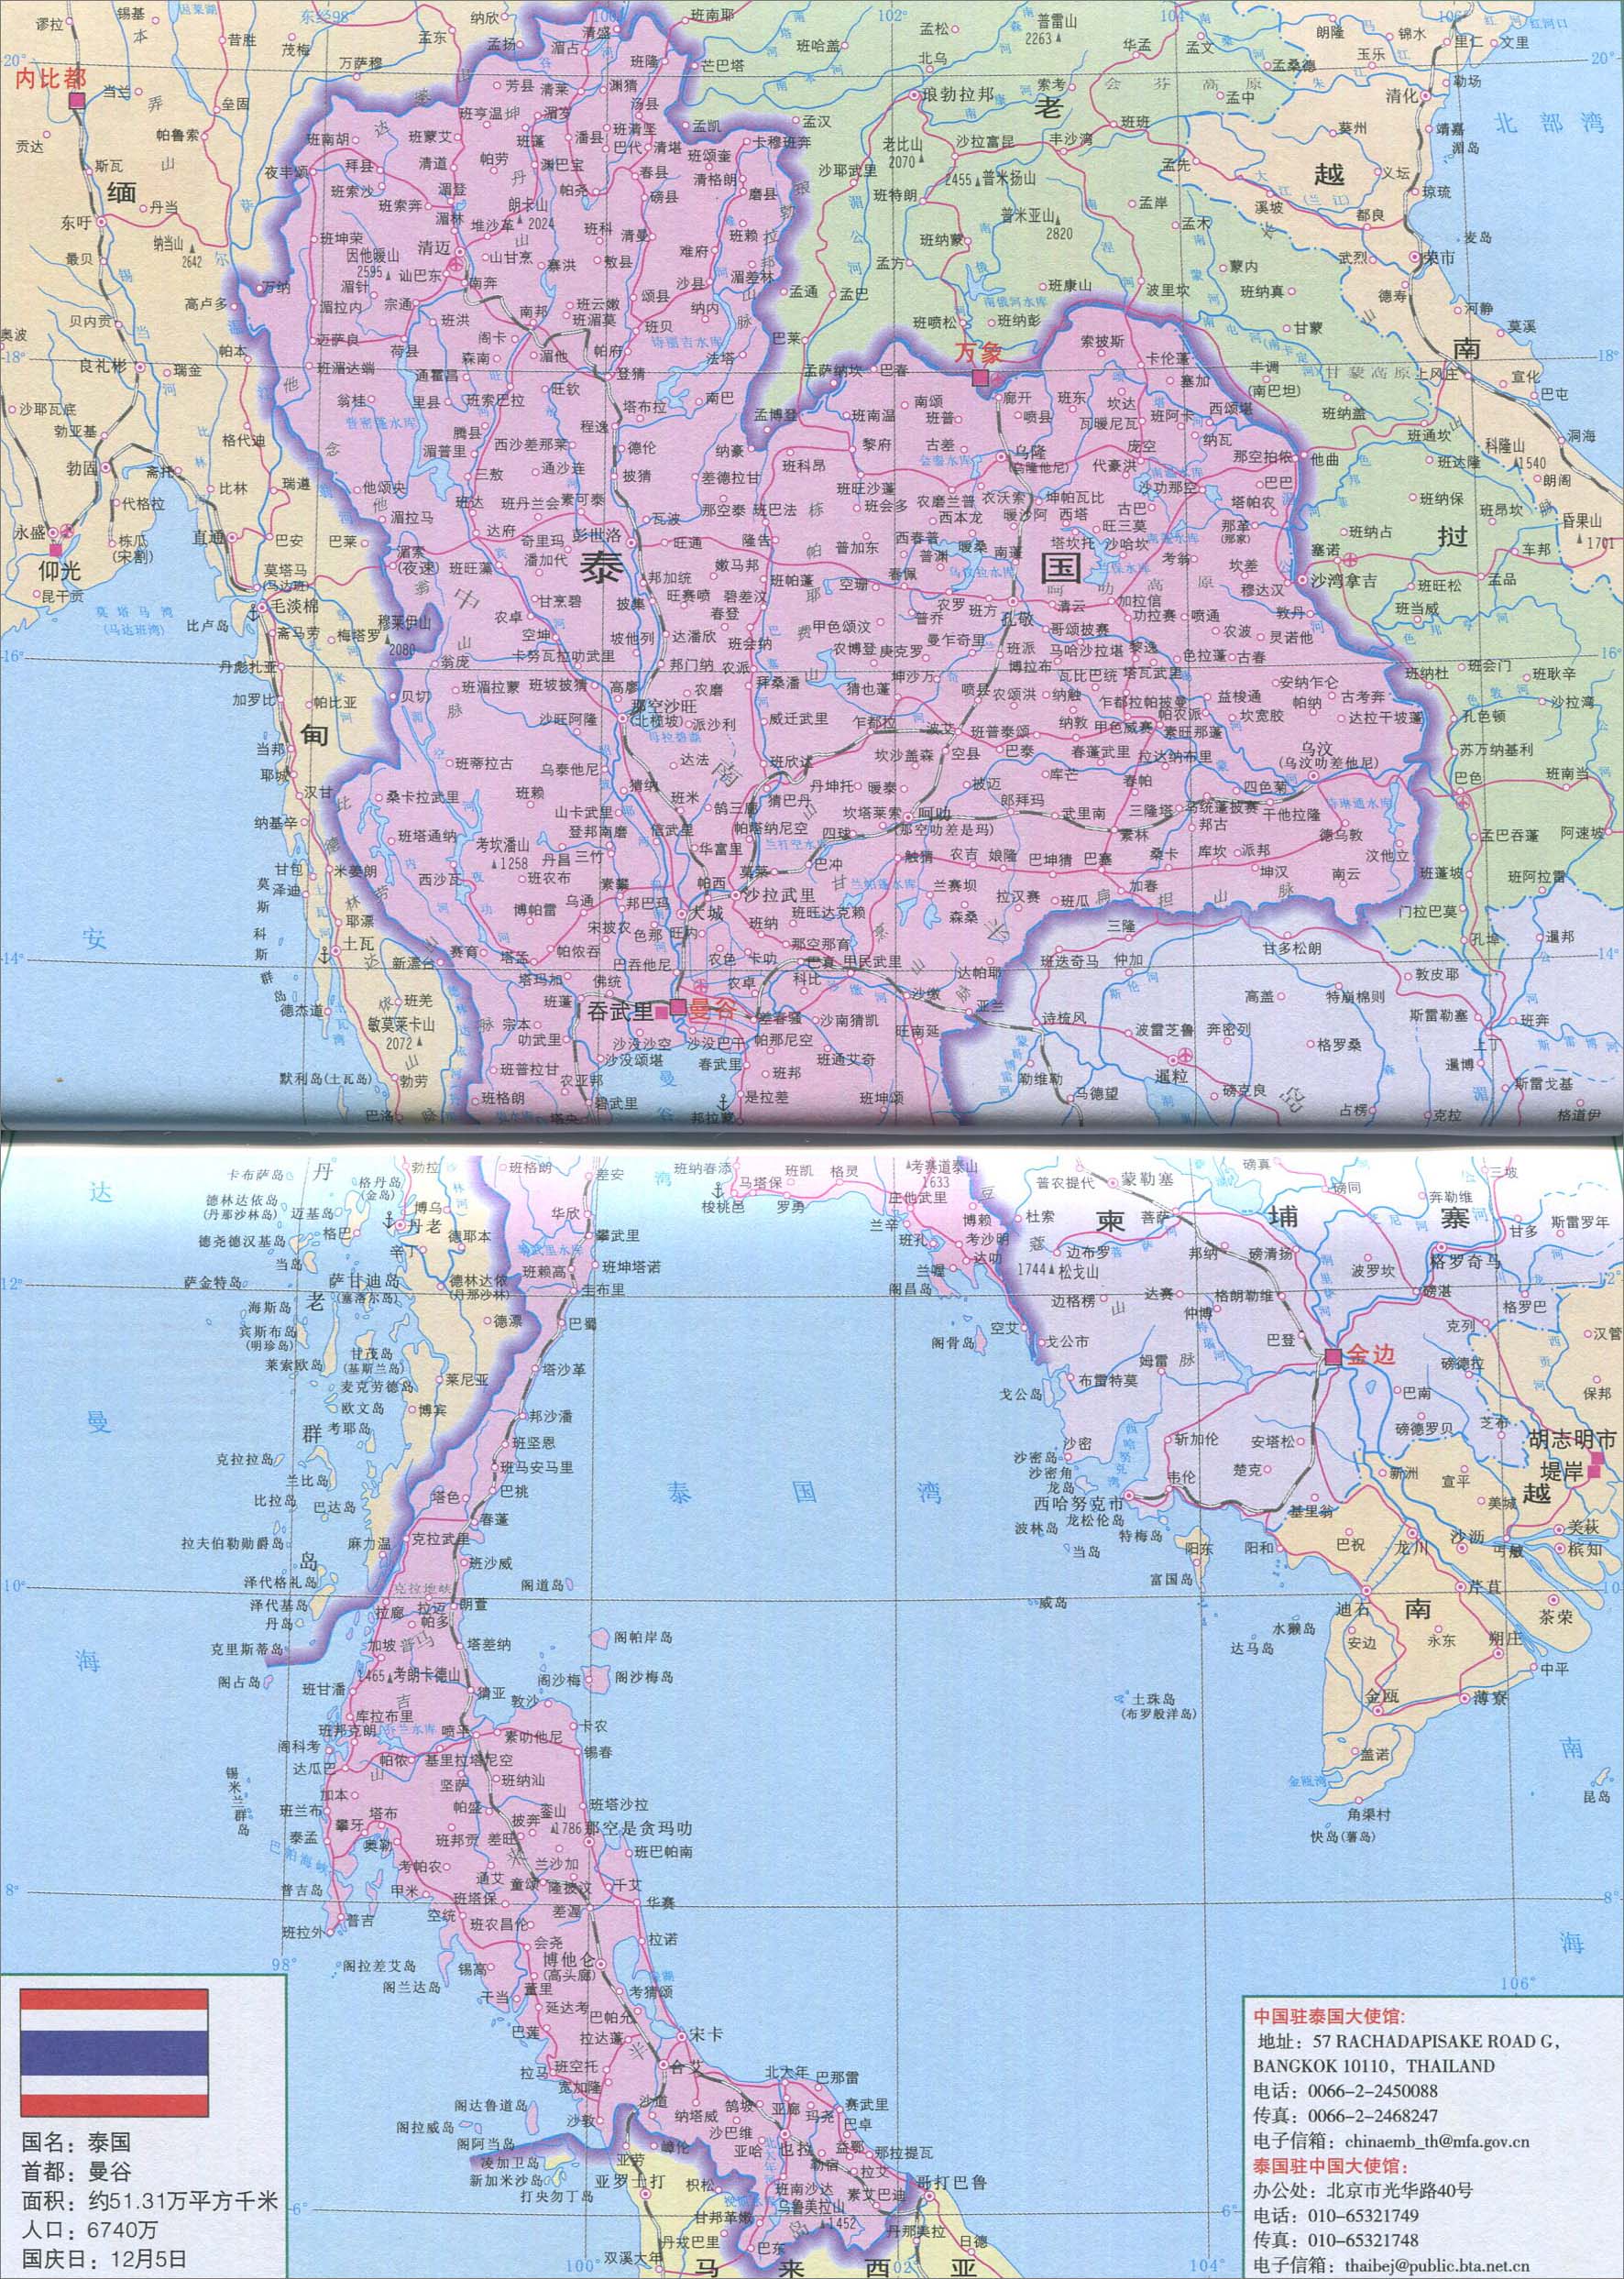 泰国旅游地图